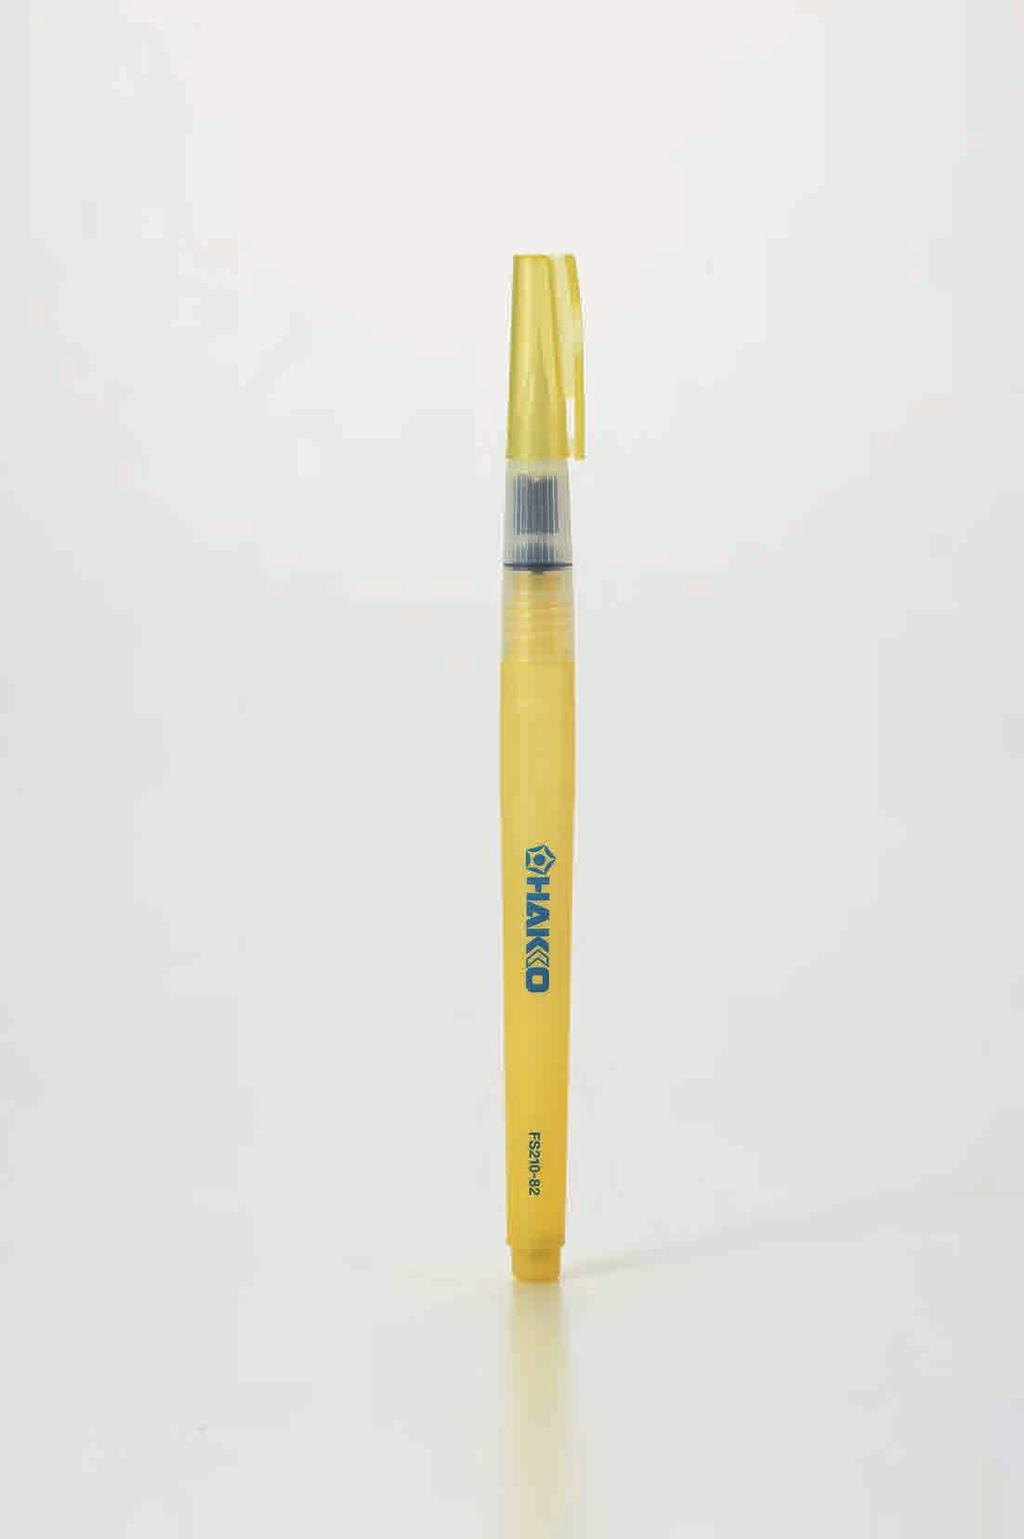 Flux Pen Brush-tip Type Flux Pen Features Pen pinpoint application of optimum